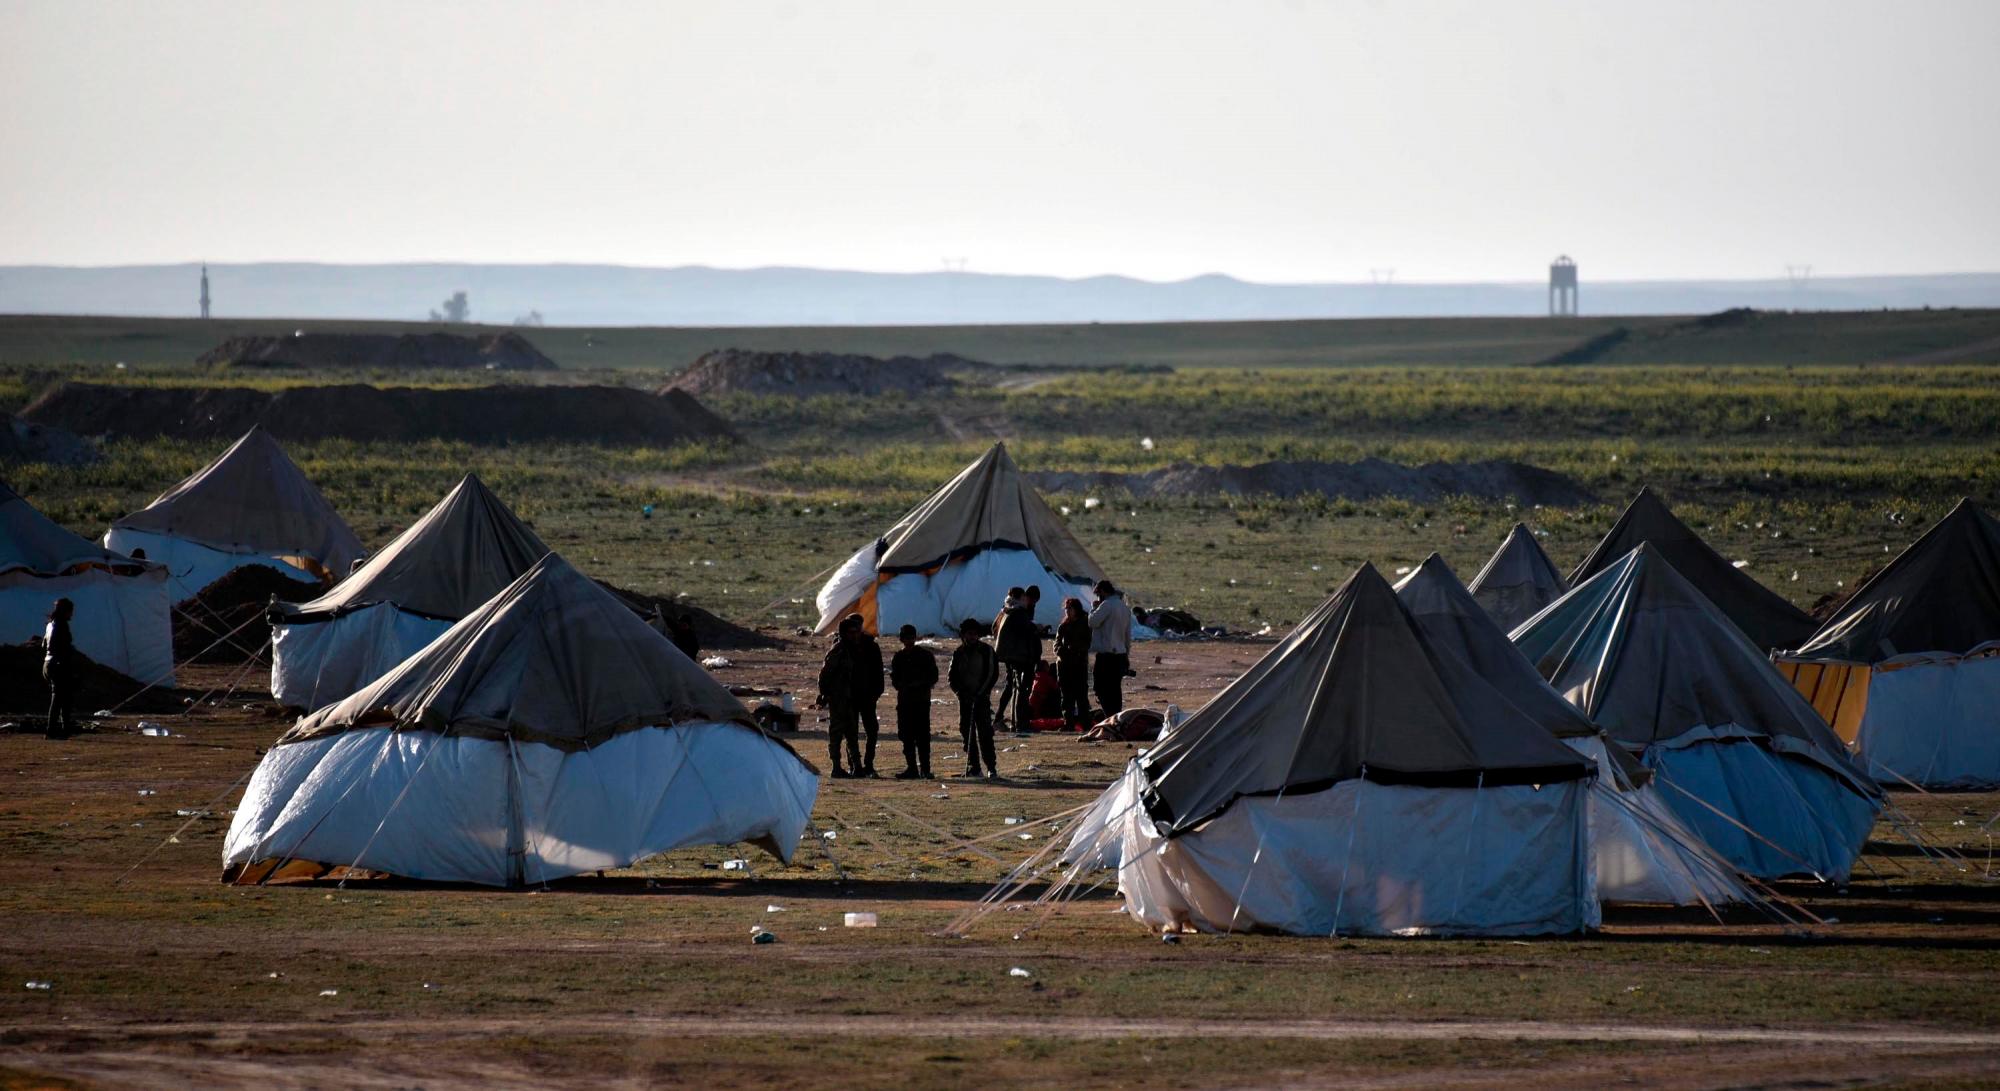 BAGHOUZ (SIRIA), 19/02/2019.- Integrante de las Fuerzas democráticas sirias respaldadas por Estados Unidos, montan guardia cerca de un campamento temporal para desplazados este martes a las afueras de Baghouz (Siria). La alta comisionada de las Naciones Unidas para los Derechos Humanos, Michelle Bachelet, manifestó su preocupación por las 200 familias atrapadas en Baghouz después de que el Estado Islámico (IS) impidiera a los civiles, entre ellos mujeres y niños, salieran de la ciudad de Baghouz, mientras que una fuente militar anunció que la evacuación de cientos de civiles del último enclave del Estado Islámico en la ciudad de Baghouz ha fracasado a pesar de la entrada de decenas de camiones para evacuarlos.